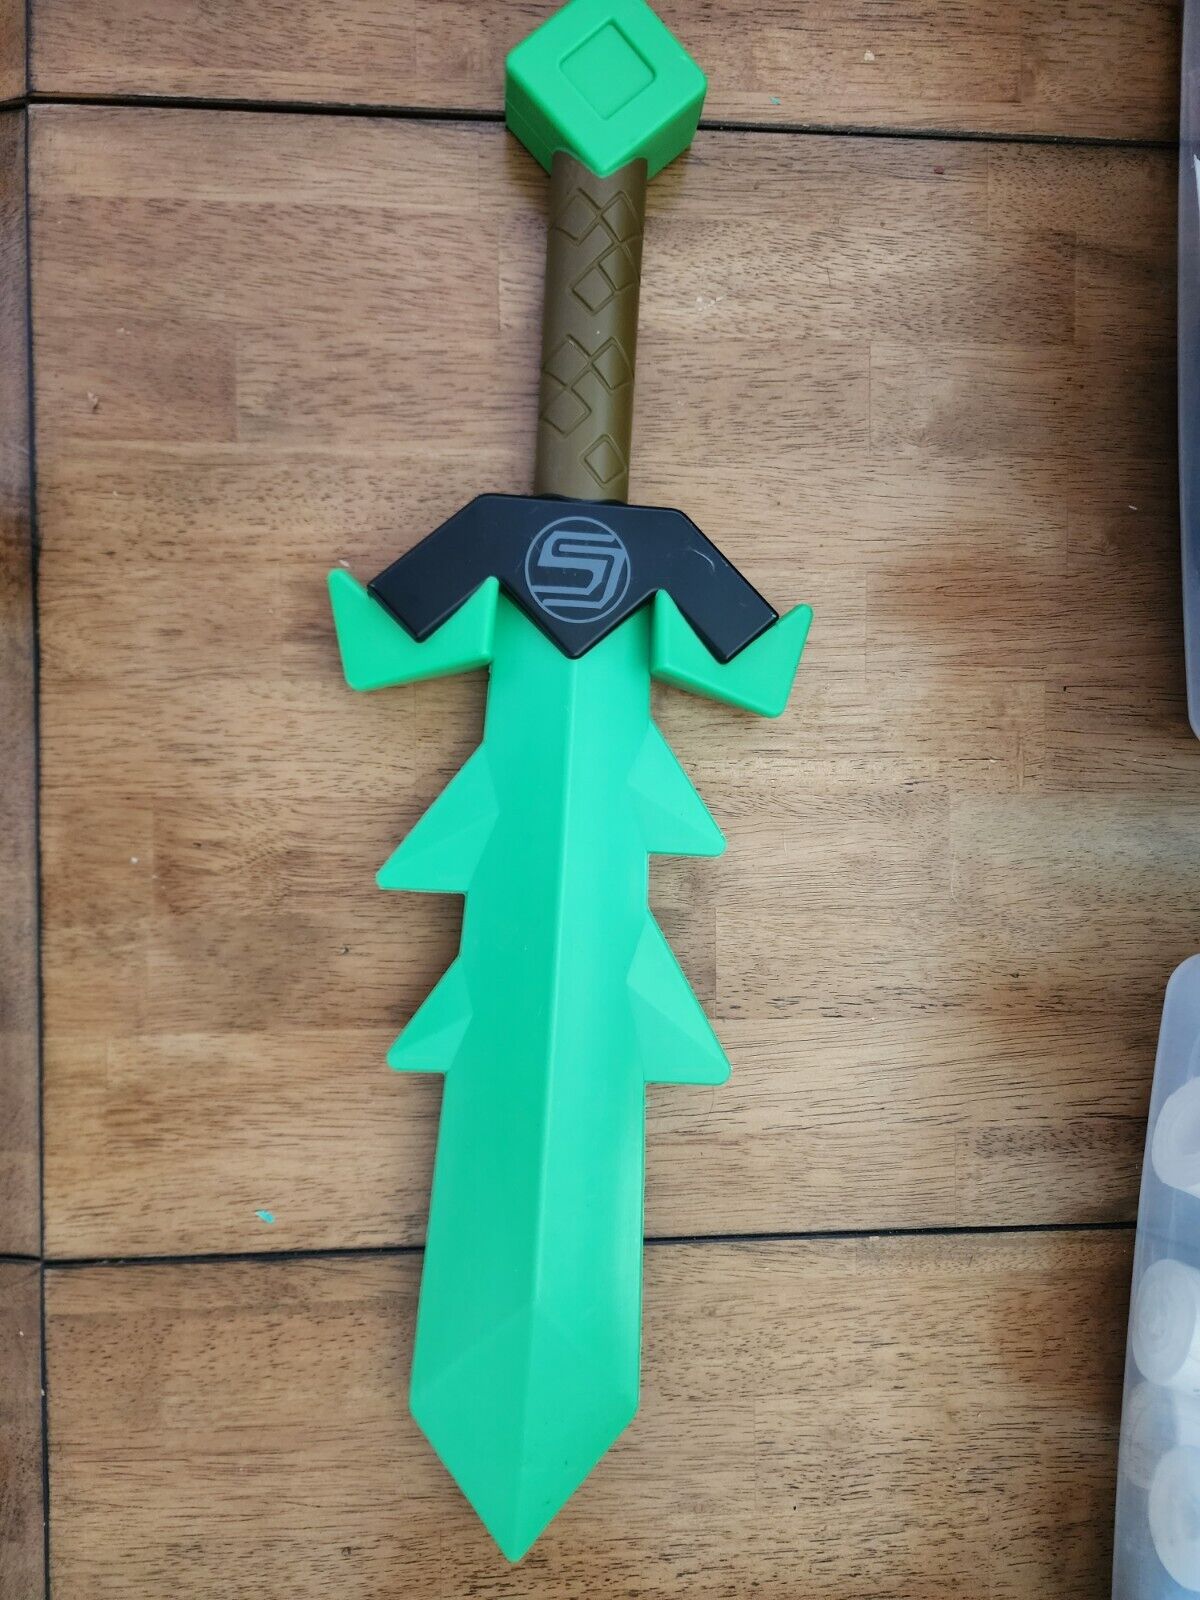 2015 Tube Heroes - Captain Sparklez' Slime Sword Green Plastic